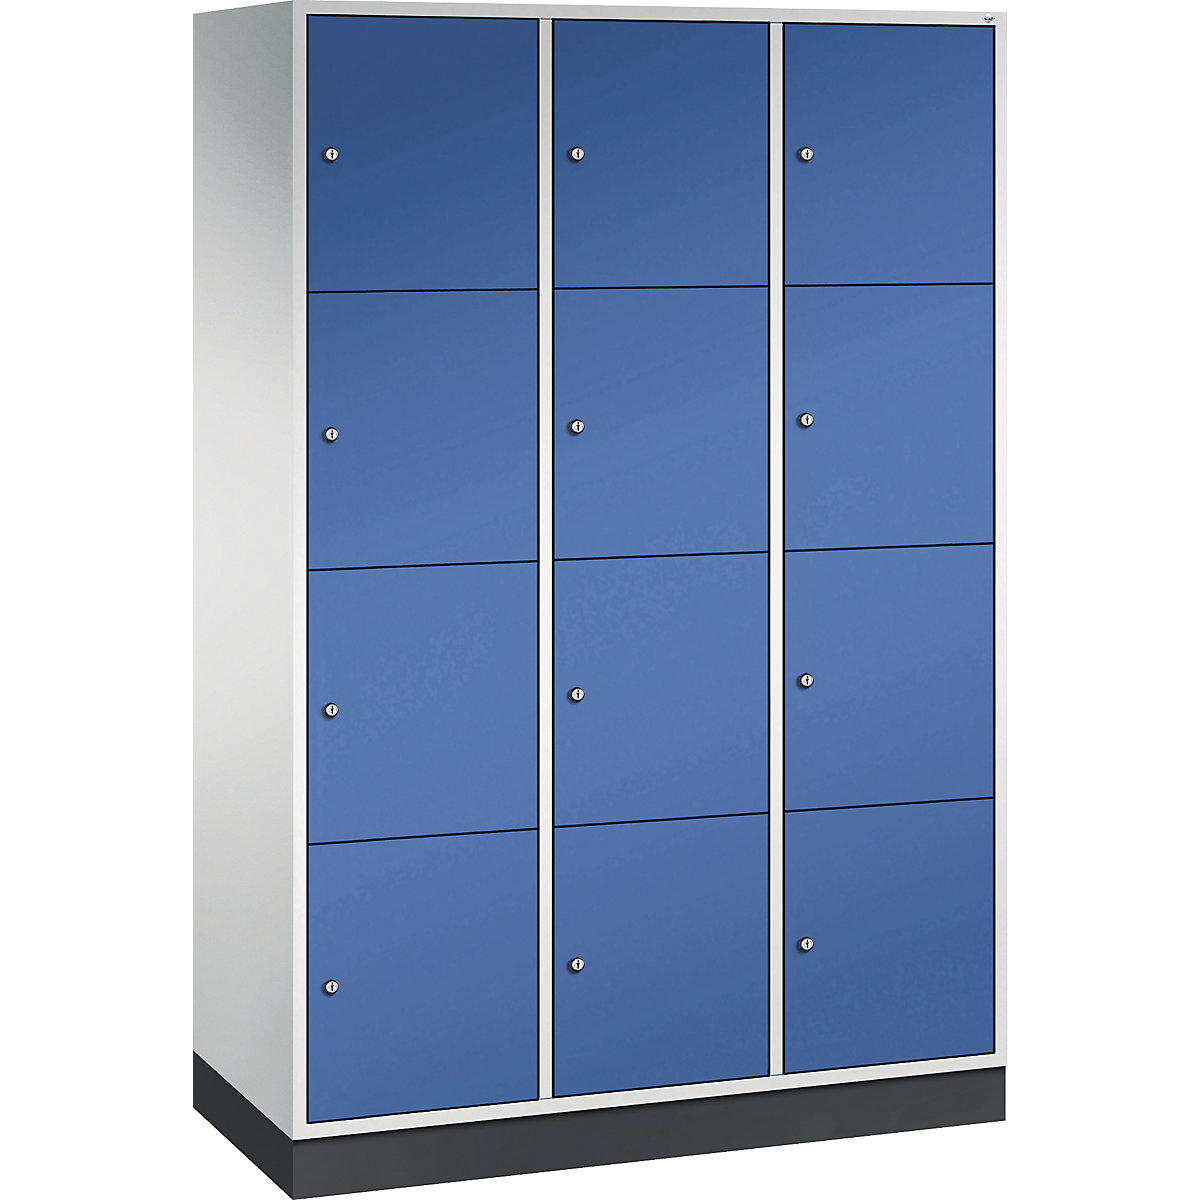 Vestiaire multicases en acier INTRO, casiers hauteur 435 mm – C+P, l x p 1220 x 500 mm, 12 casiers, corps gris clair, portes bleu gentiane-6